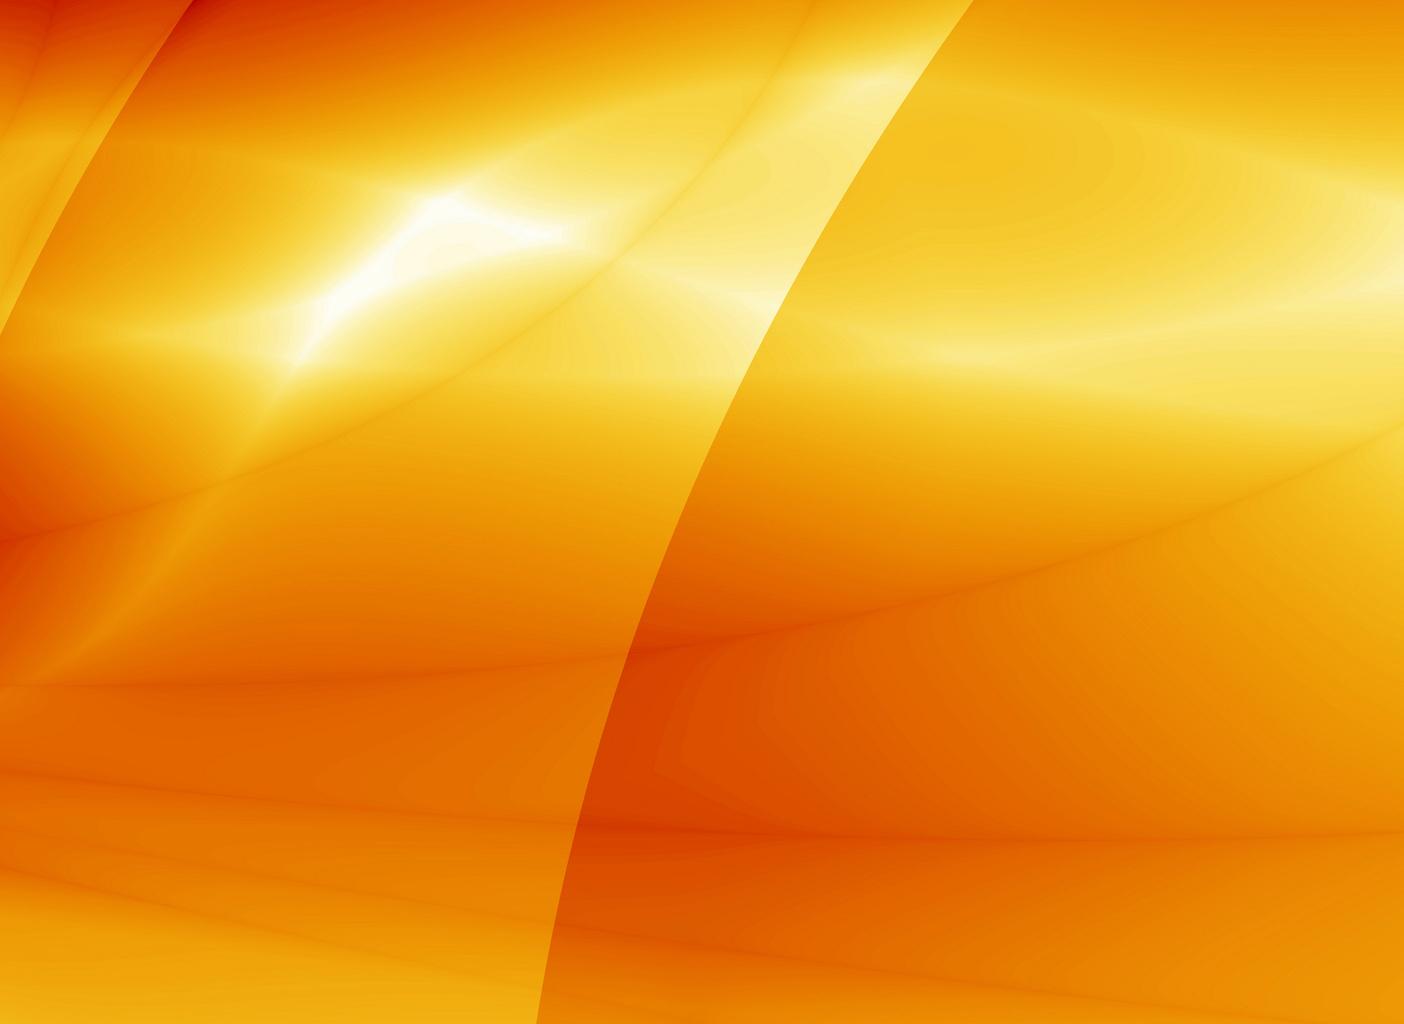 Hình ảnh slide vàng cam